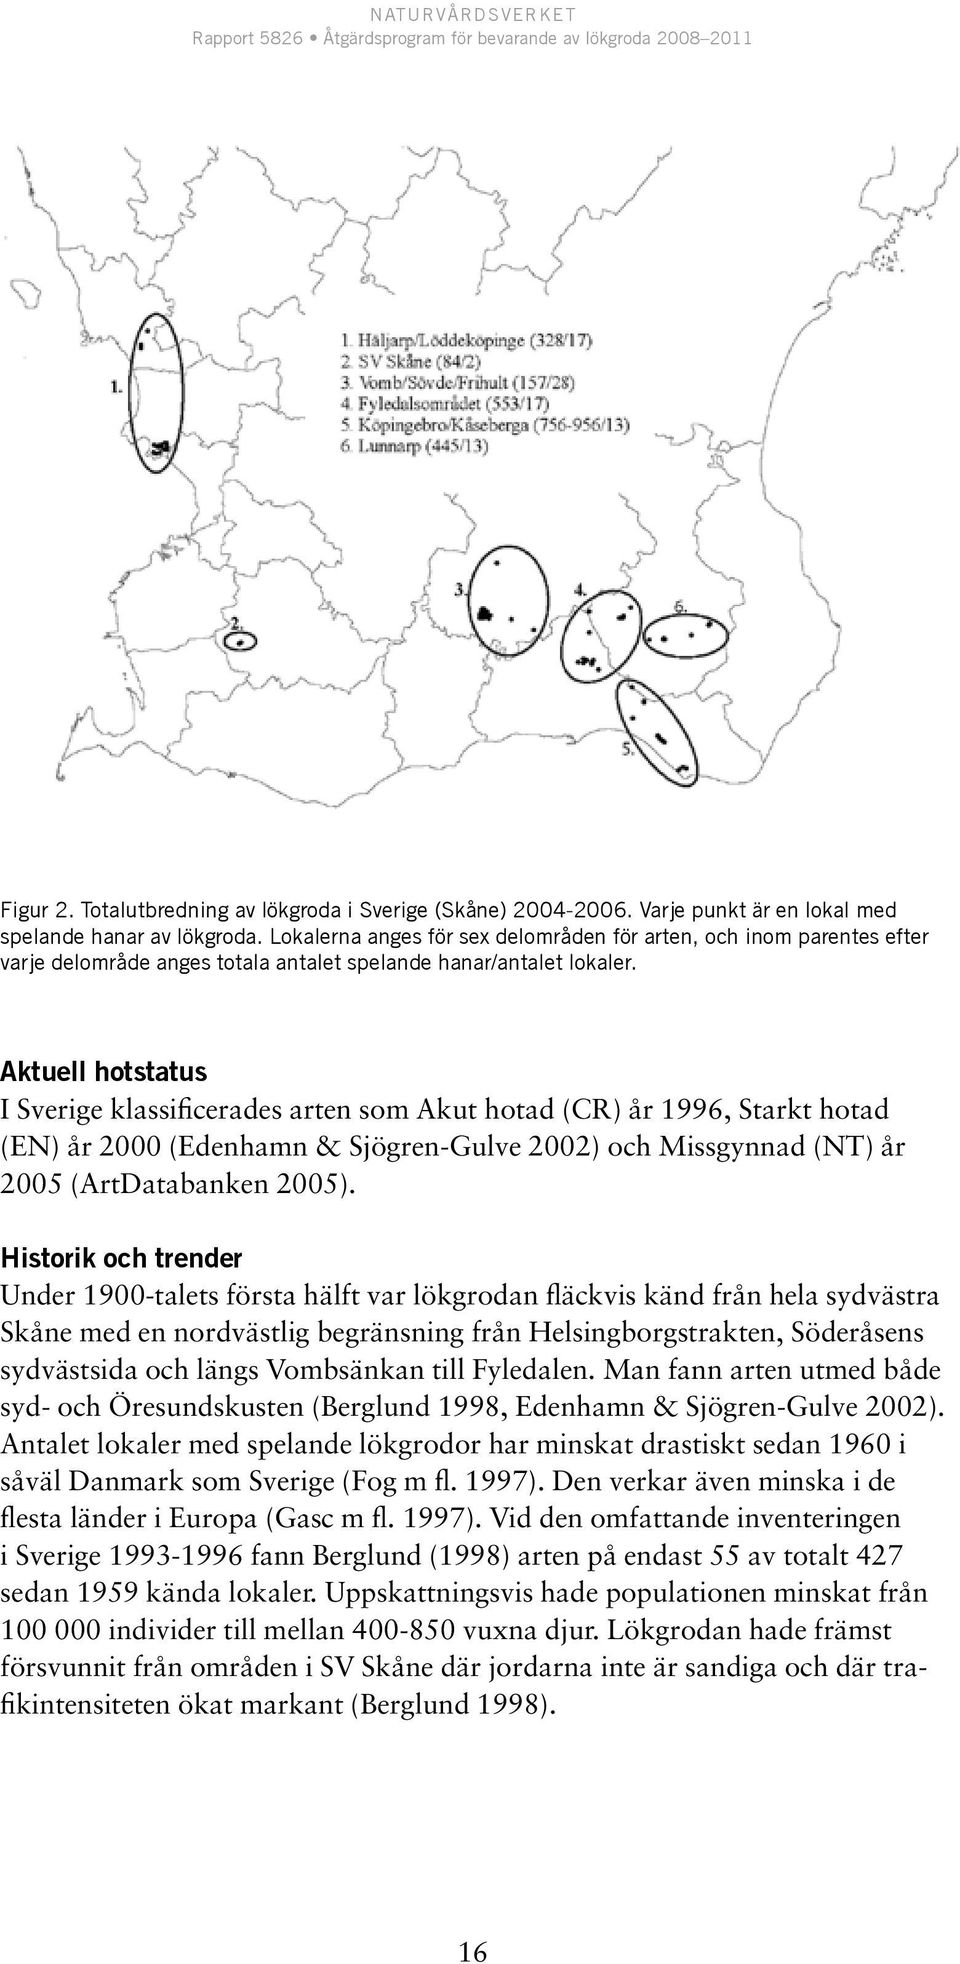 Aktuell hotstatus I Sverige klassificerades arten som Akut hotad (CR) år 1996, Starkt hotad (EN) år 2000 (Edenhamn & Sjögren-Gulve 2002) och Missgynnad (NT) år 2005 (ArtDatabanken 2005).